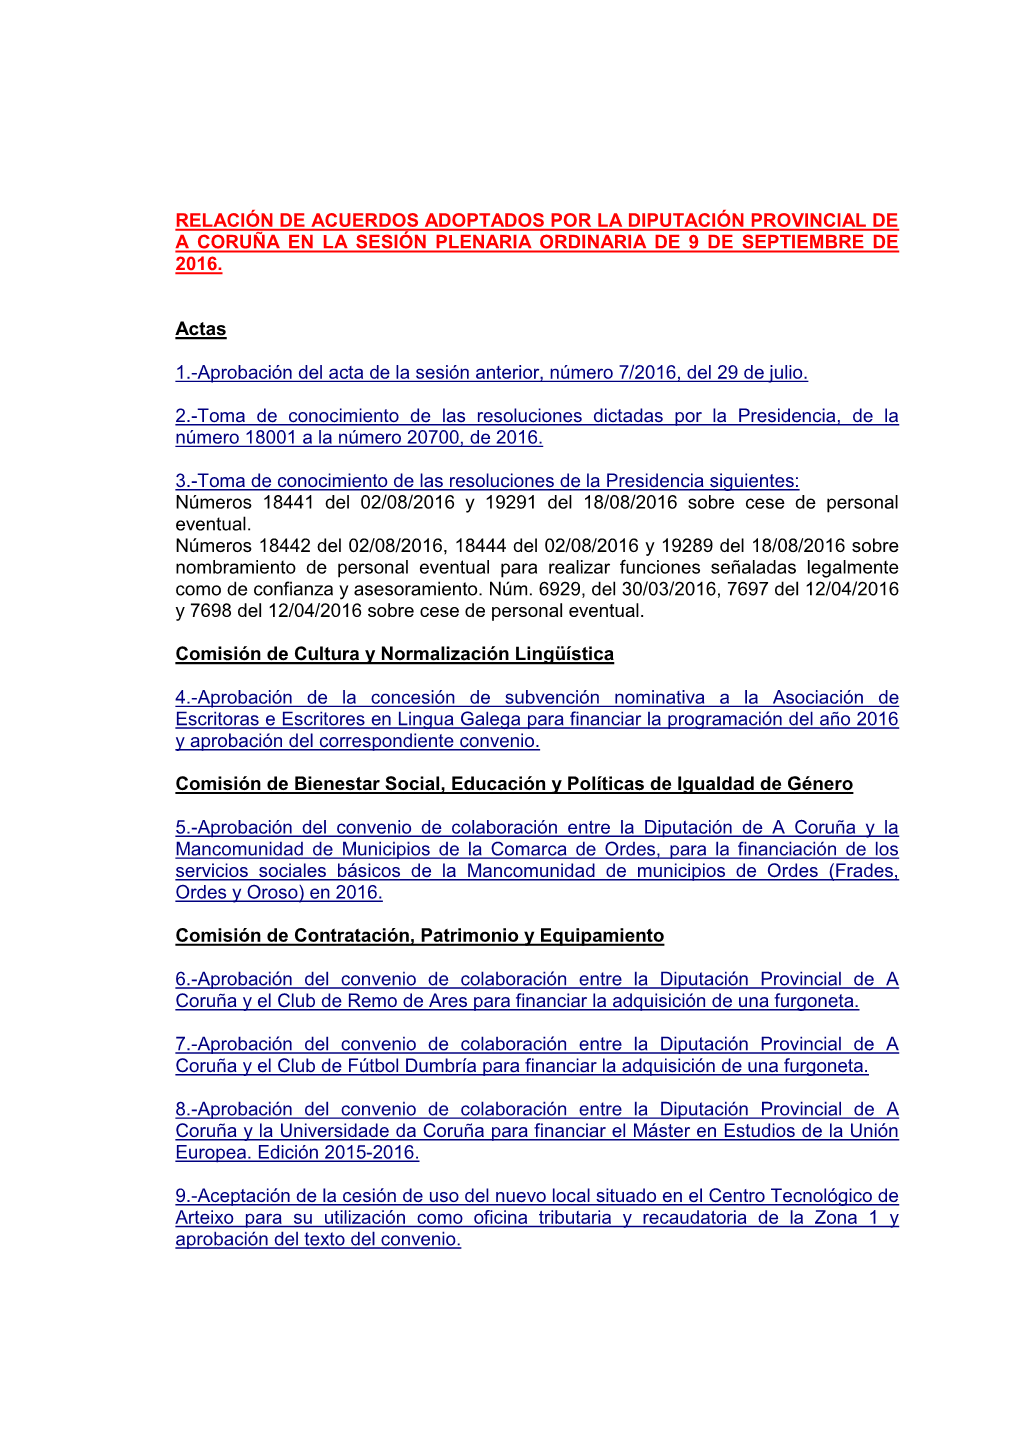 Relación De Acuerdos Adoptados Por La Diputación Provincial De a Coruña En La Sesión Plenaria Ordinaria De 9 De Septiembre De 2016